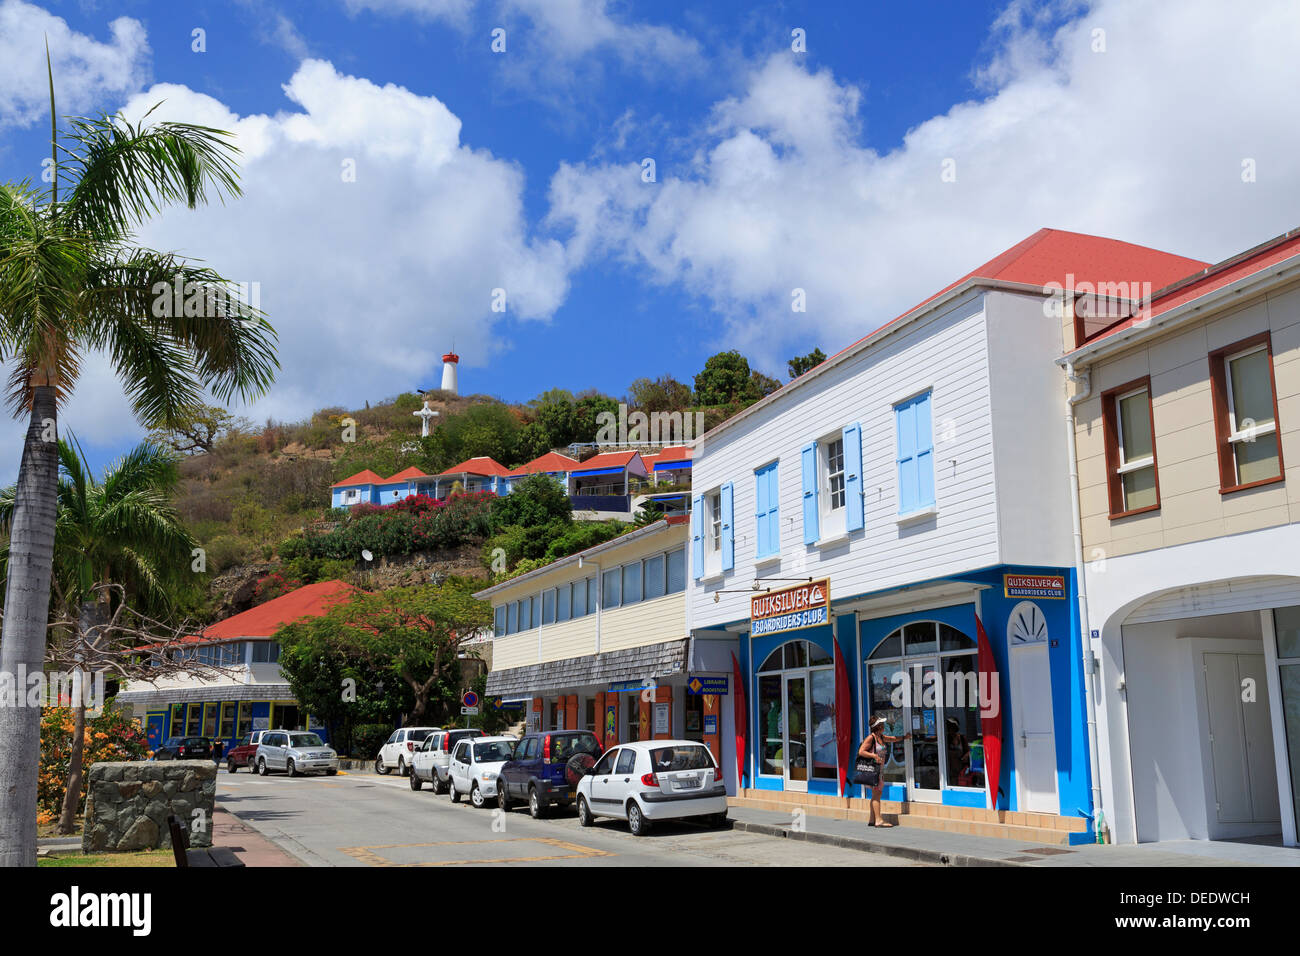 Rue de la République à Gustavia, Saint Barthélemy (St. Barth), les îles sous le vent, Antilles, Caraïbes, Amérique Centrale Banque D'Images